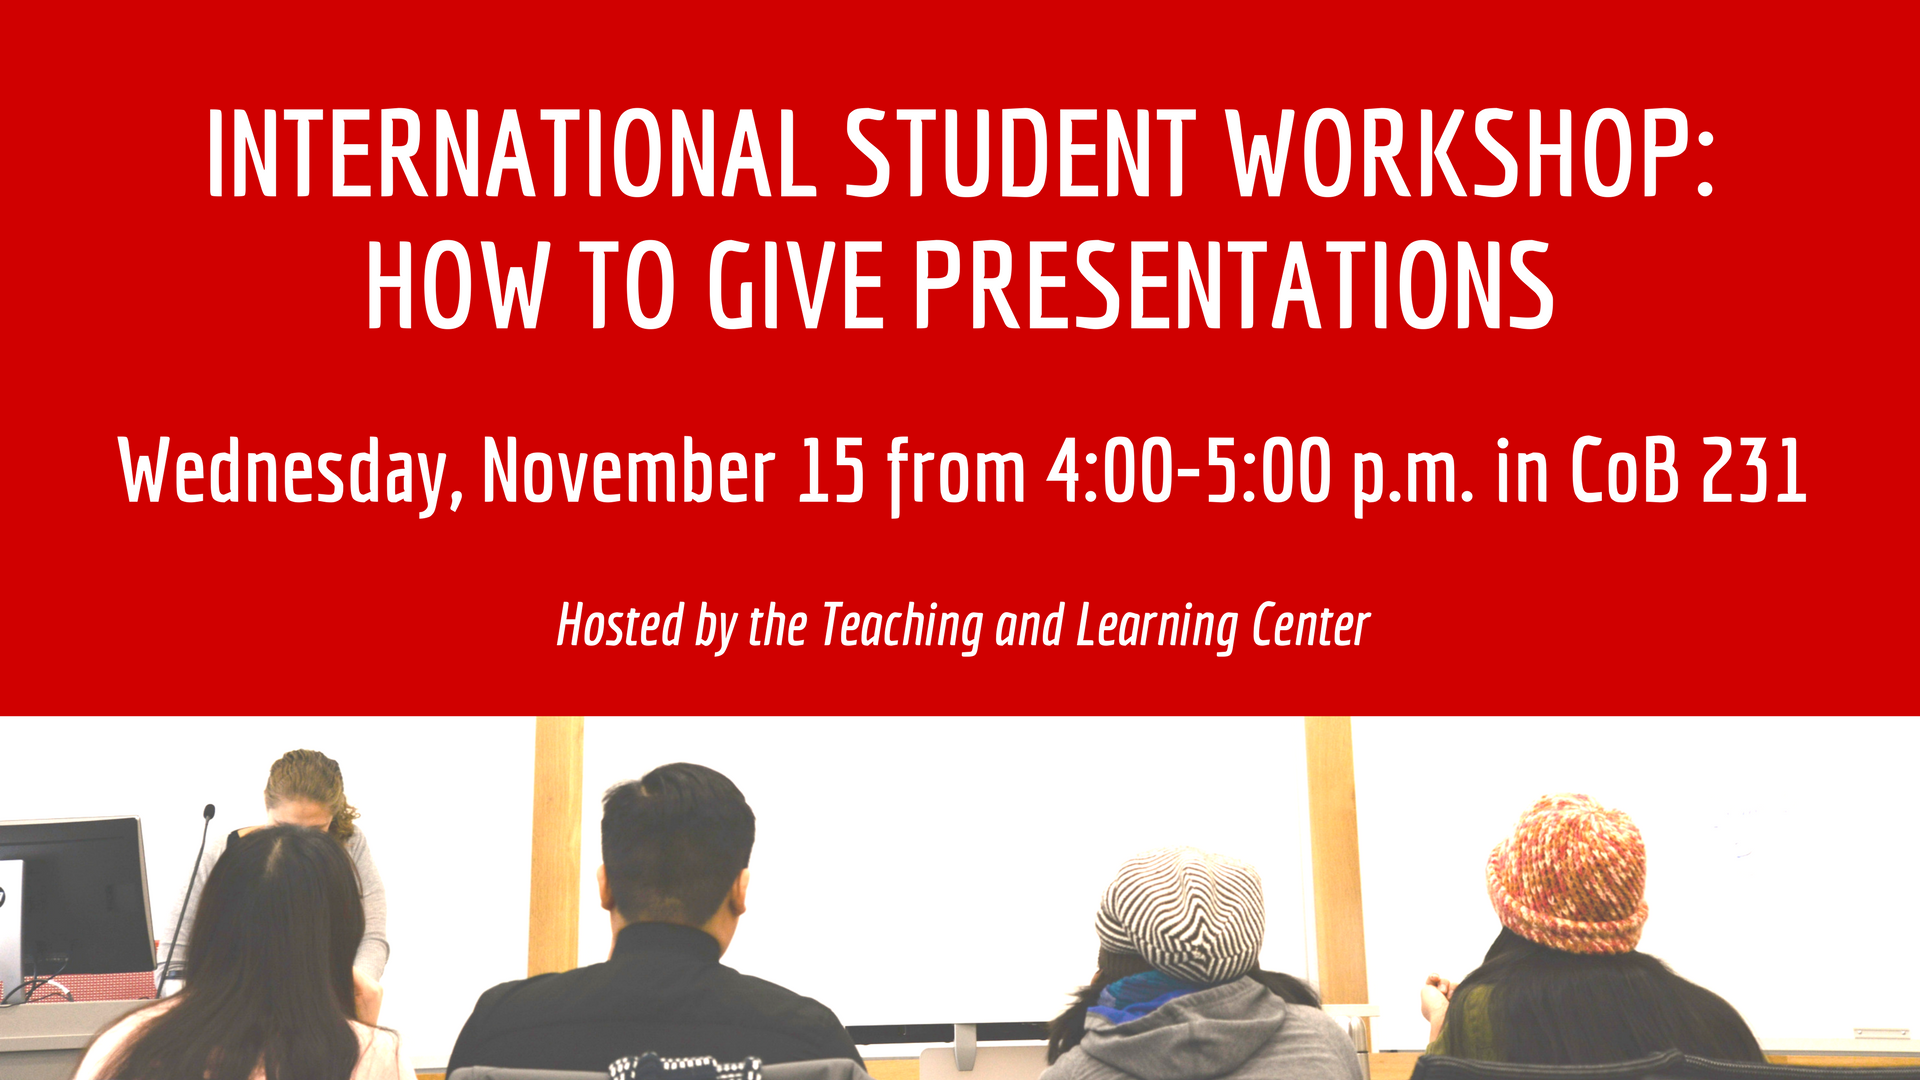 Workshop on Giving Presentations is November 15.